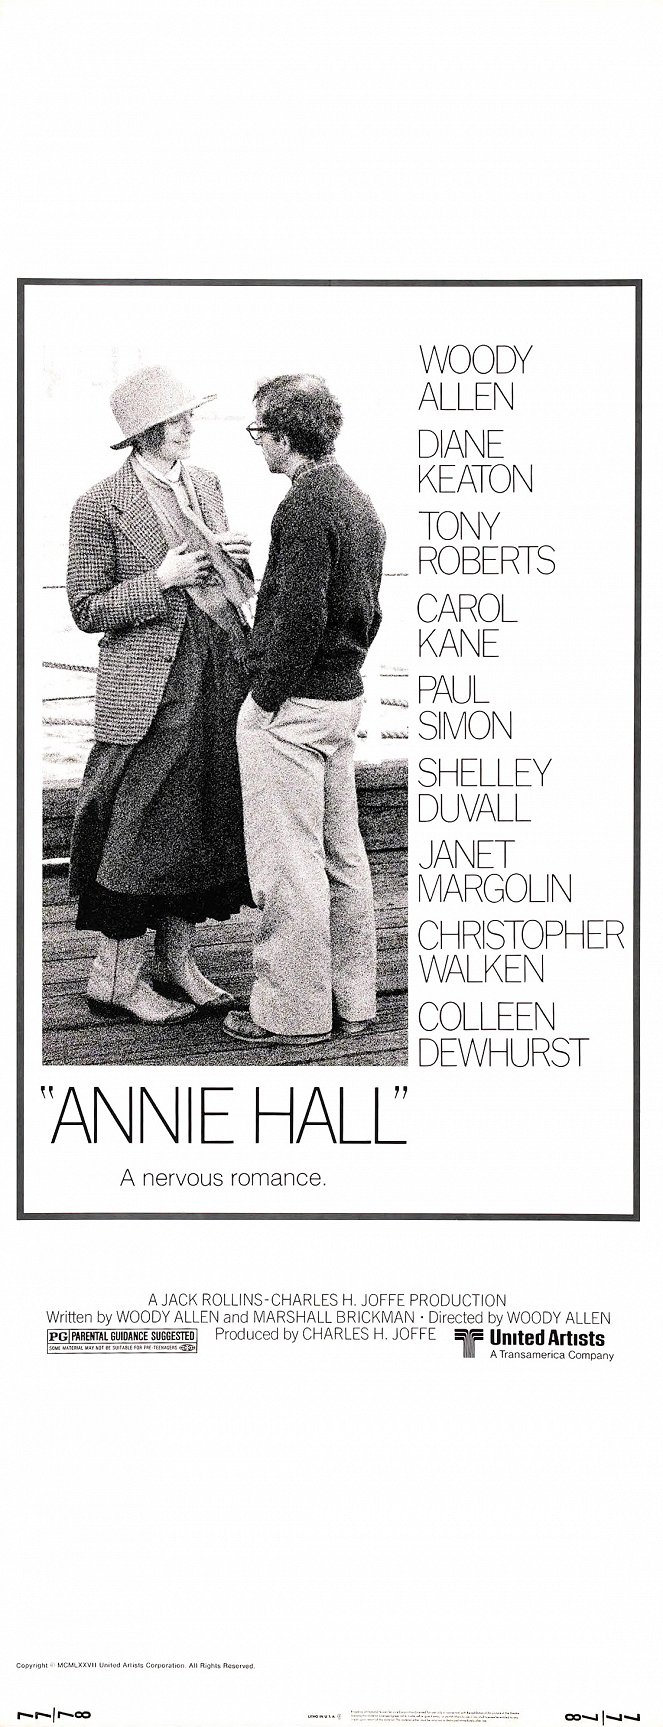 Annie Hallová - Plakáty